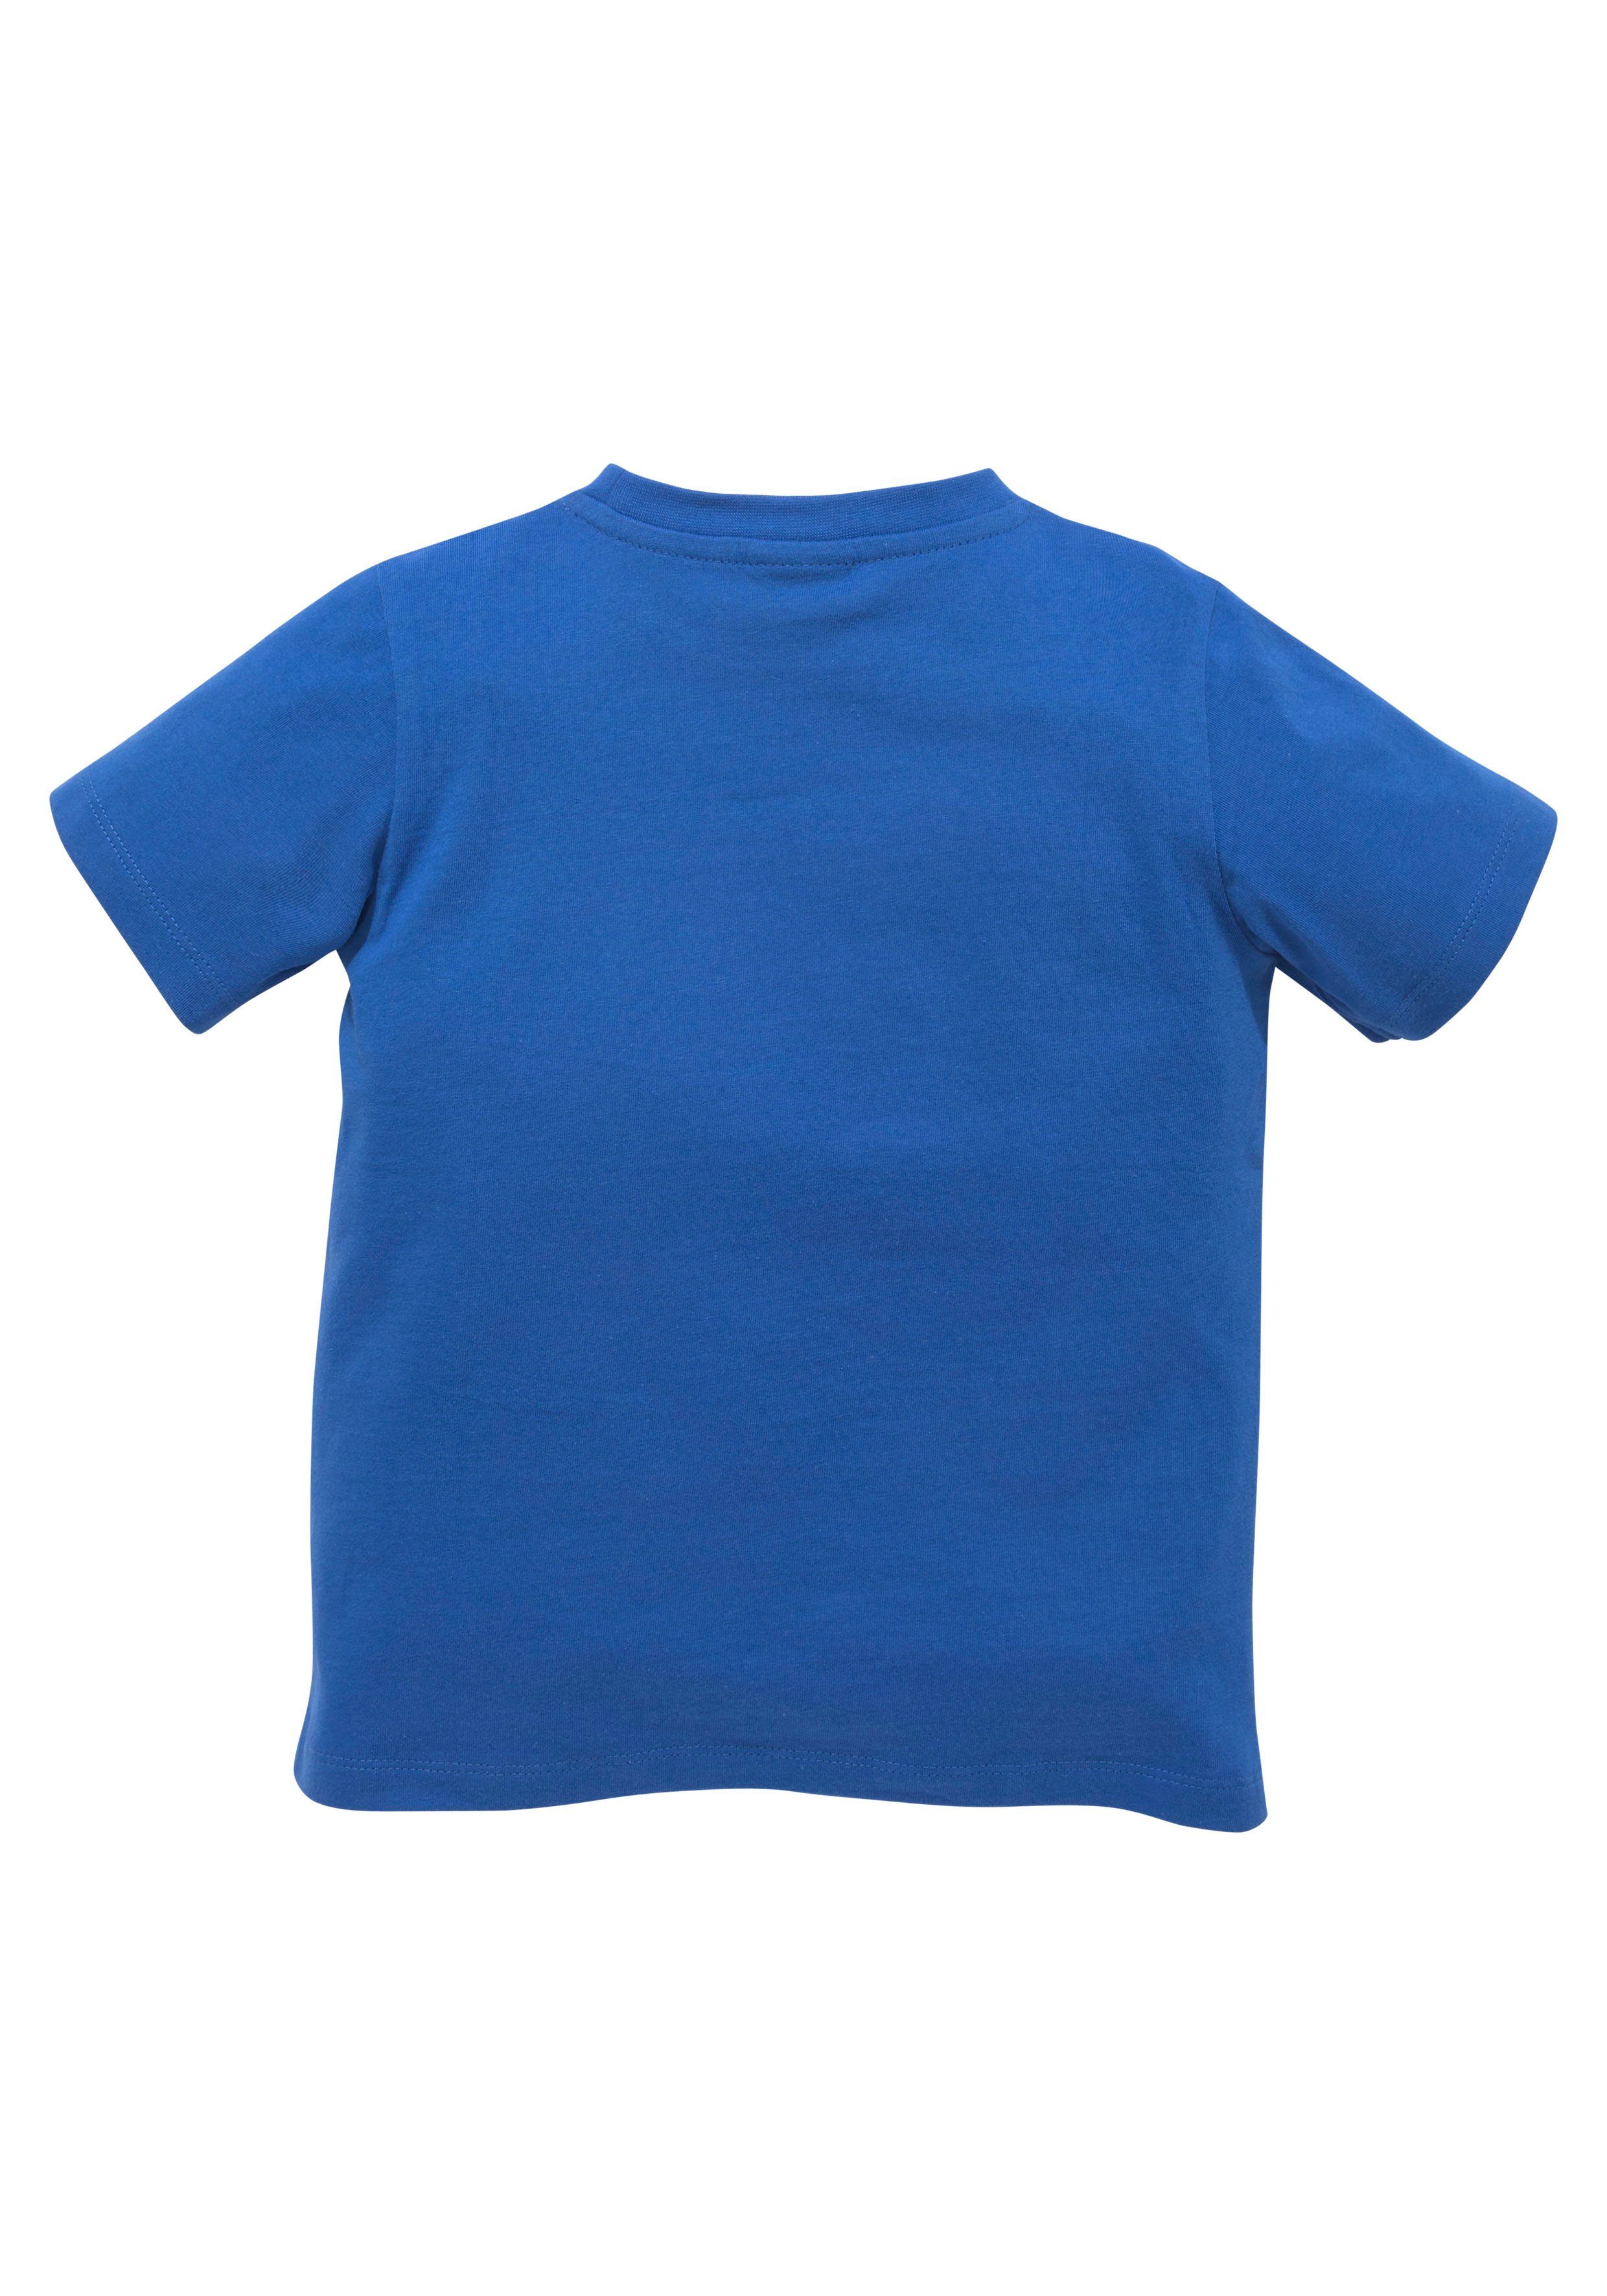 TOOOR, T-Shirt Spruch KIDSWORLD